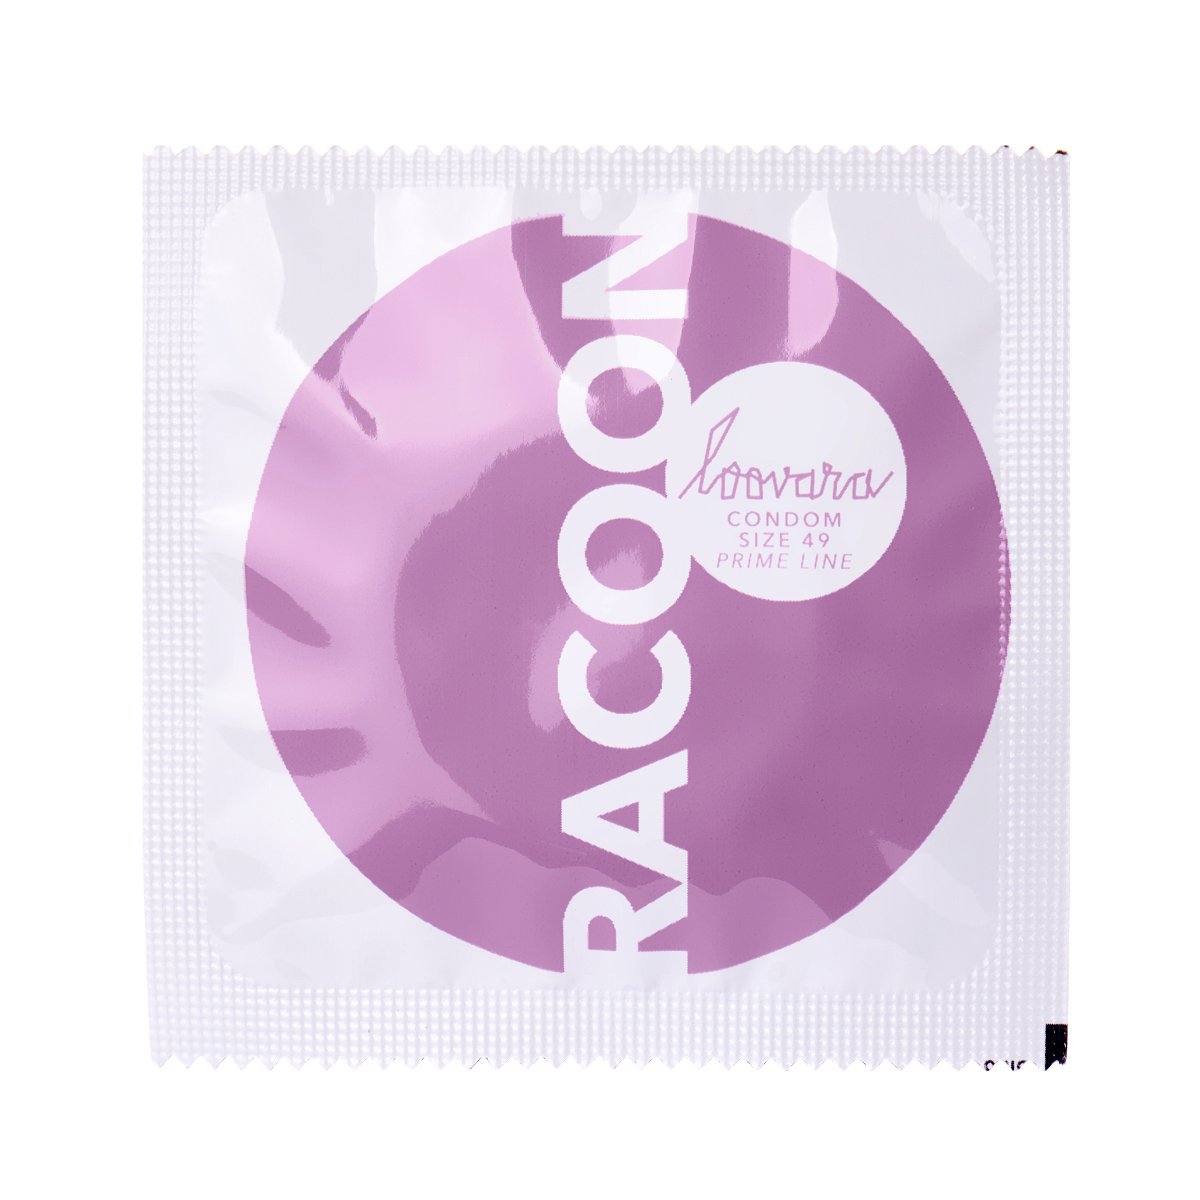 Racoon 49 Condoms